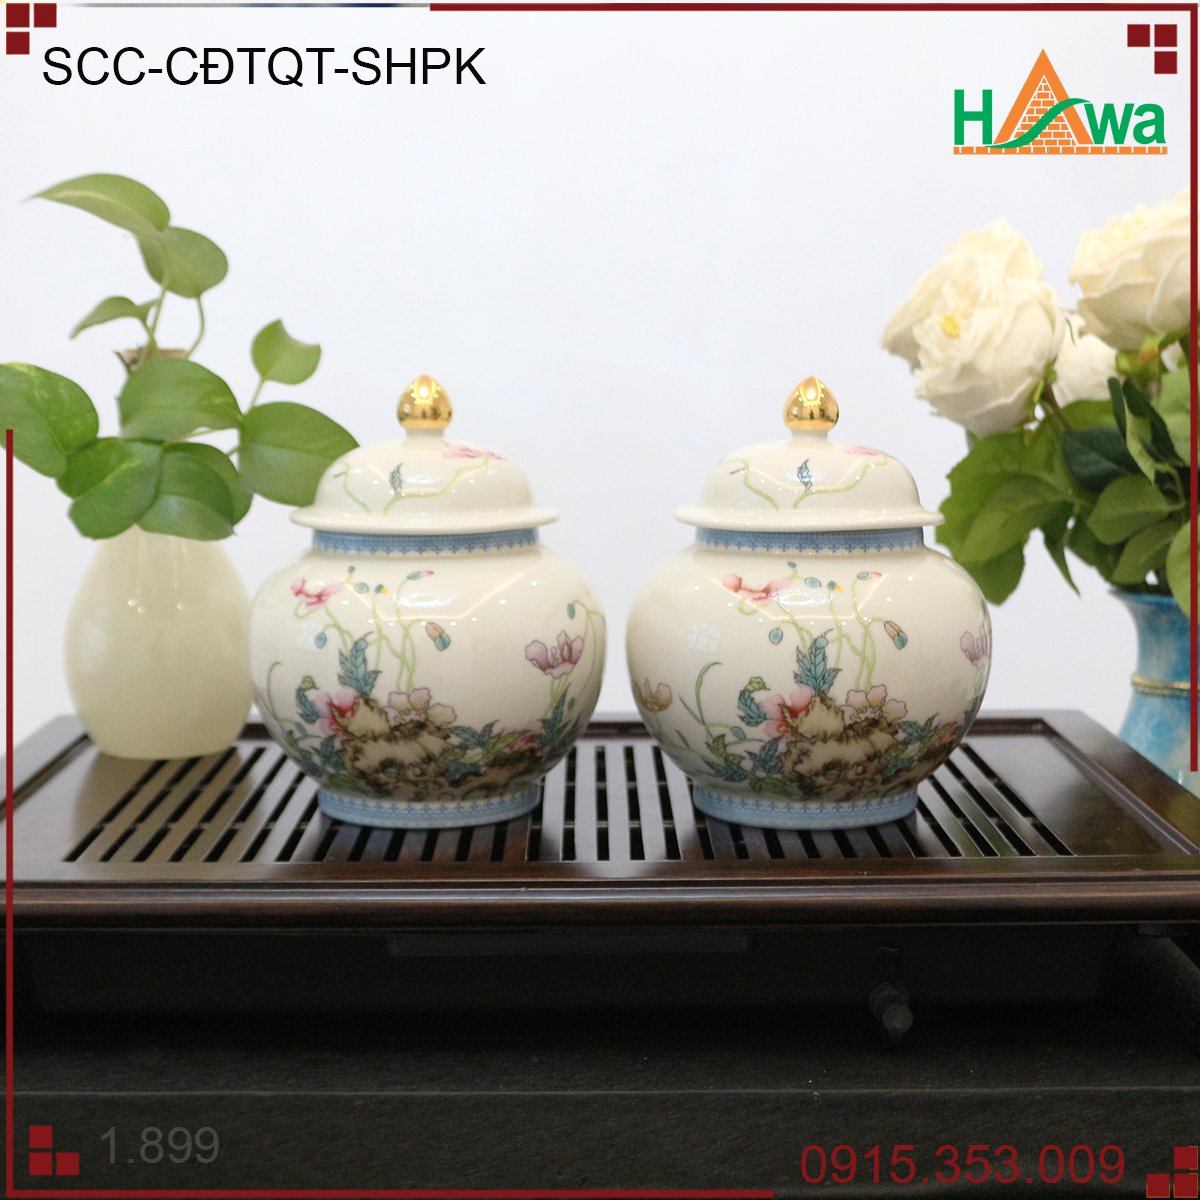 Chum đựng trà quý tộc, sứ hoa phúc kiến (SCC-CĐTQT-SHPK)